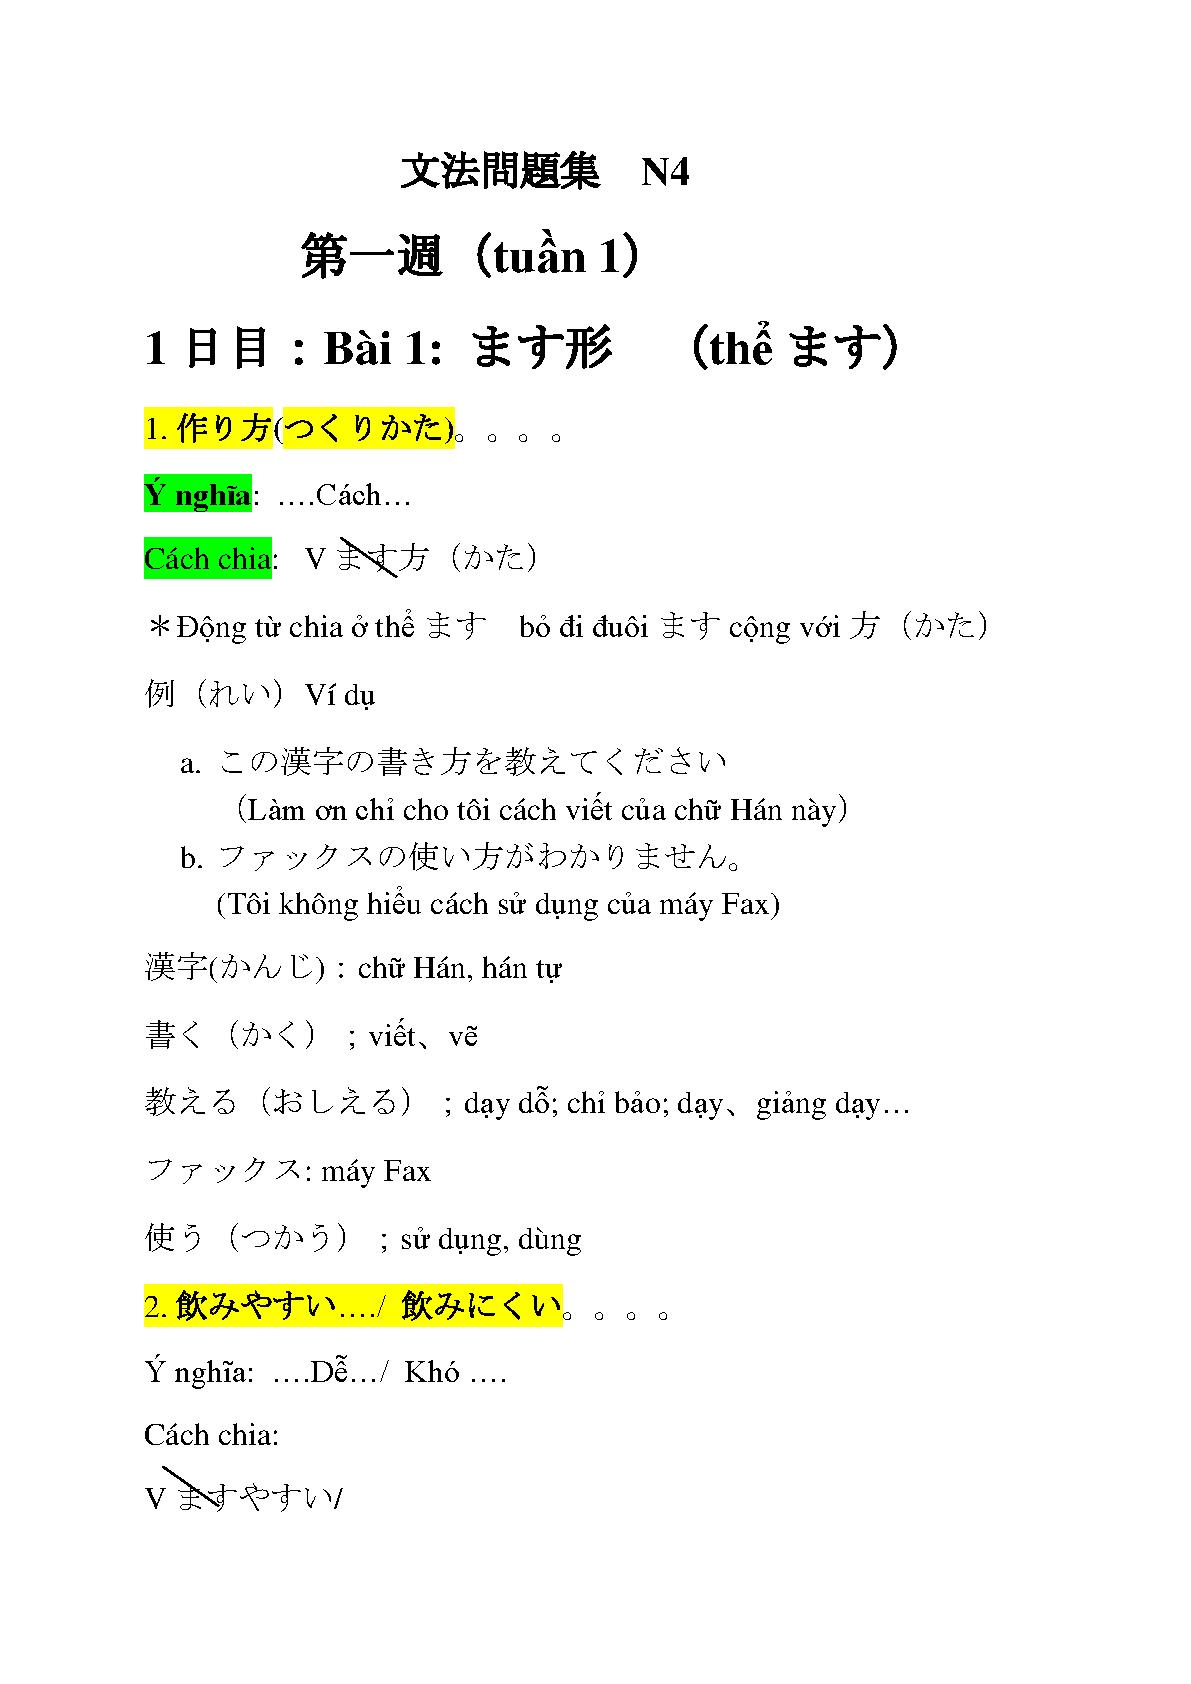 Tổng hợp ngữ pháp N4 đầy đủ nhất - Ngữ pháp Tiếng Nhật